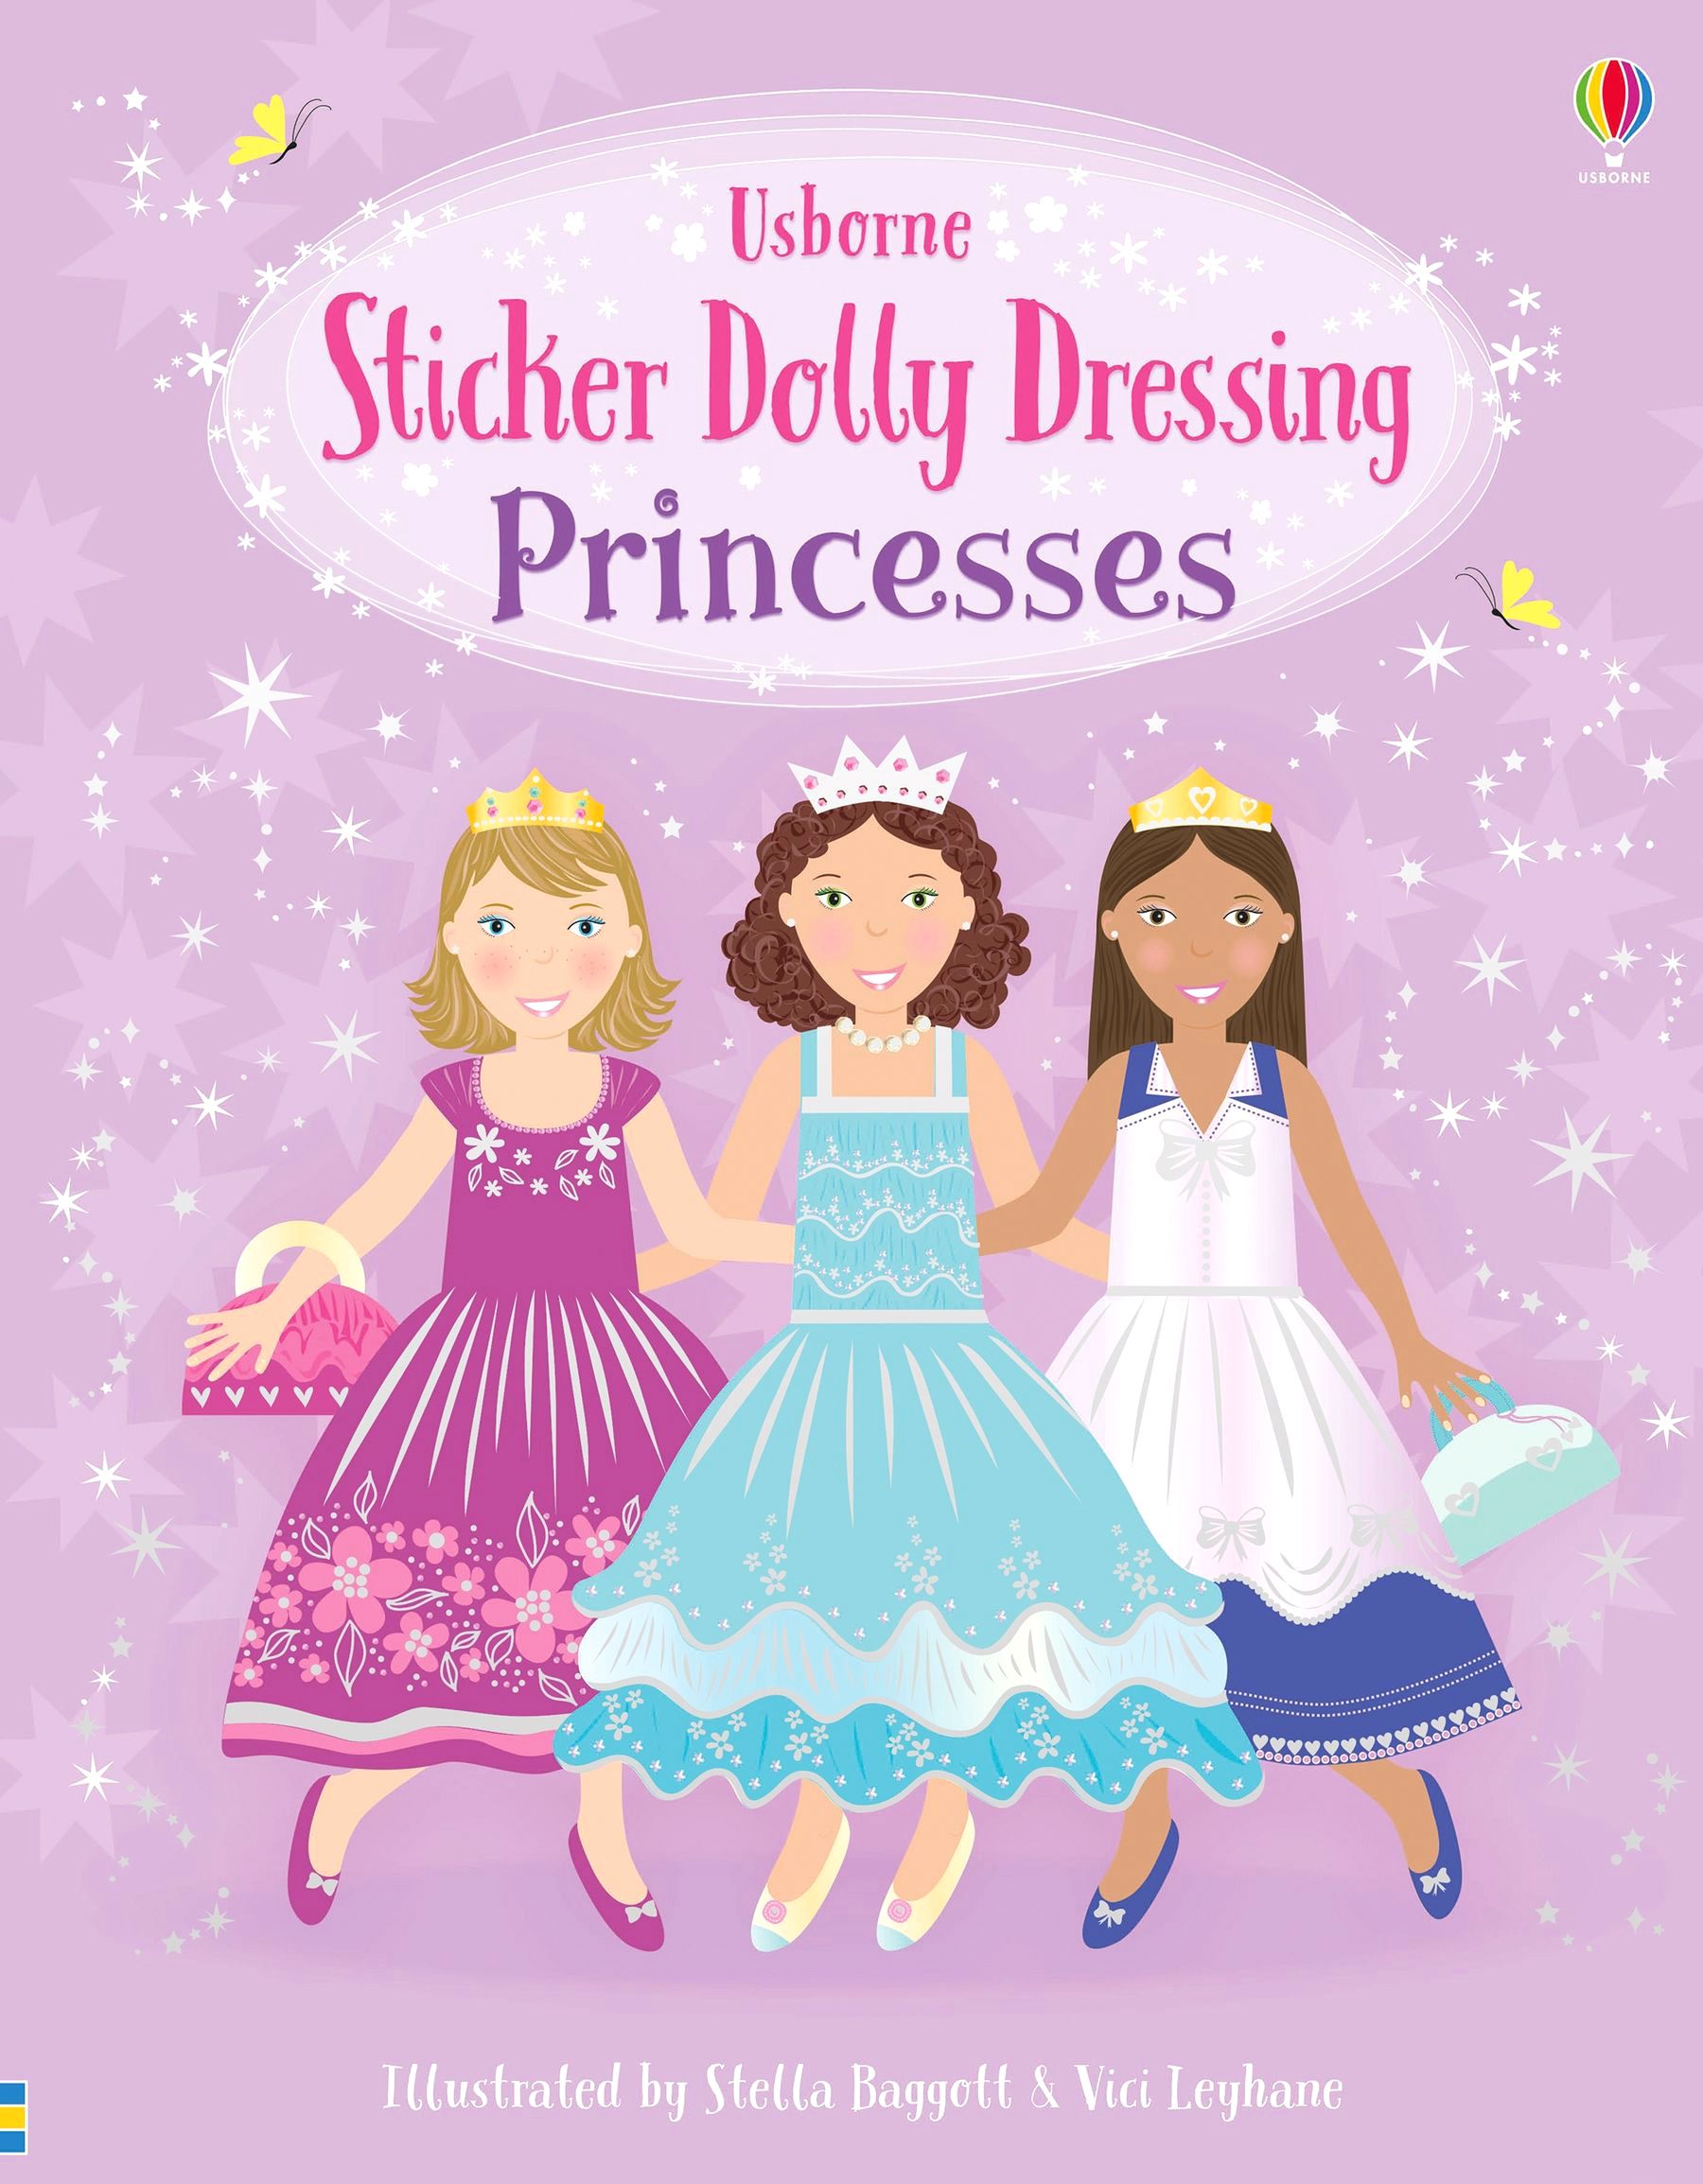 Книга платье принцессы. Принцессы обложка. Обложка принцесса английского языка. Sticker Dolly Dressing. Книга принцессы, ватт ф..